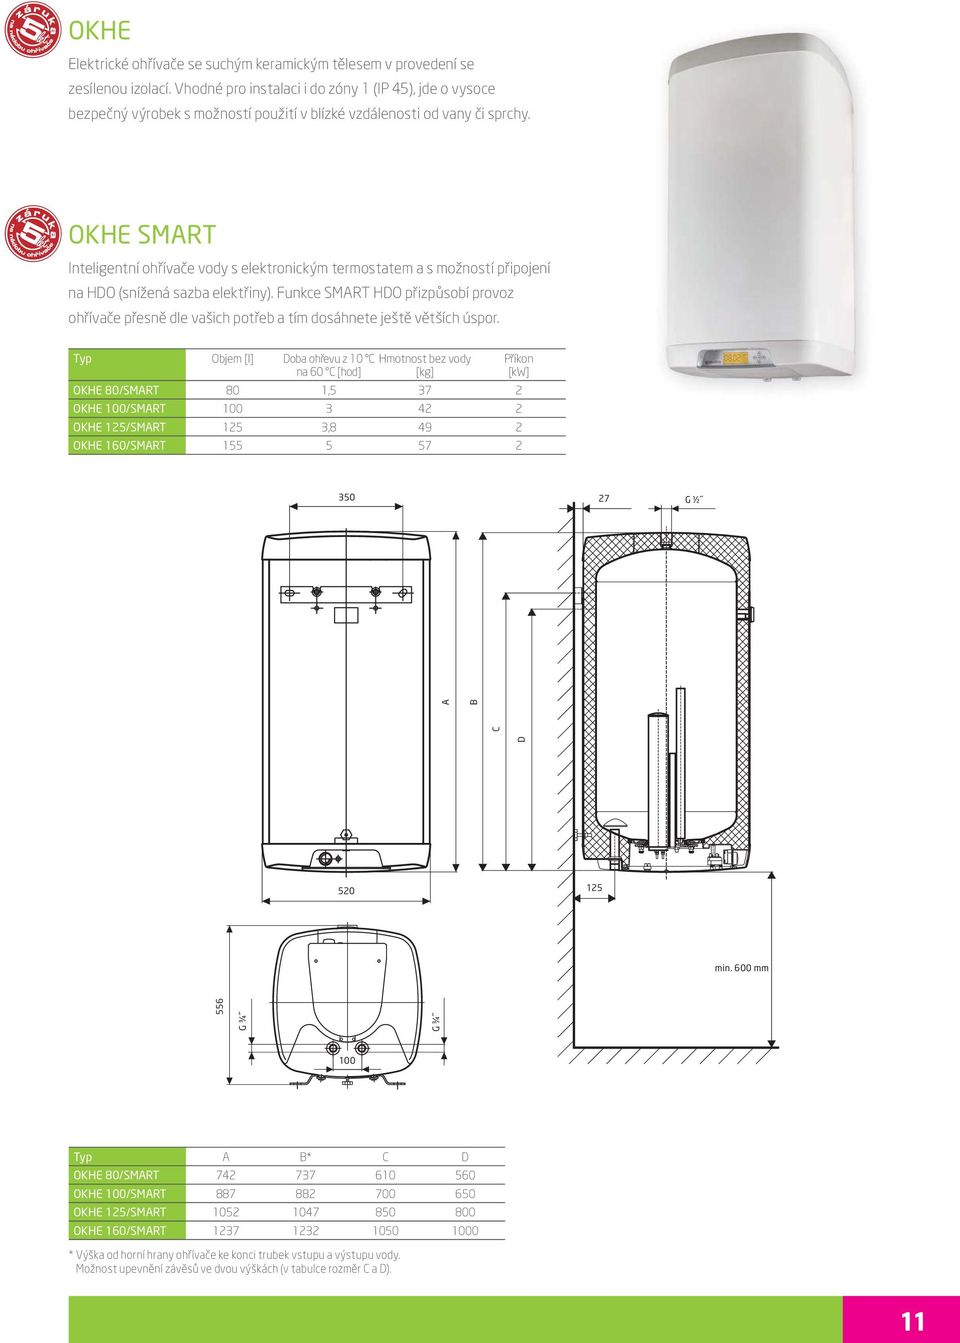 OKH SMRT Inteligentní ohřívače vody s elektronickým termostatem a s možností připojení na HO (snížená sazba elektřiny).